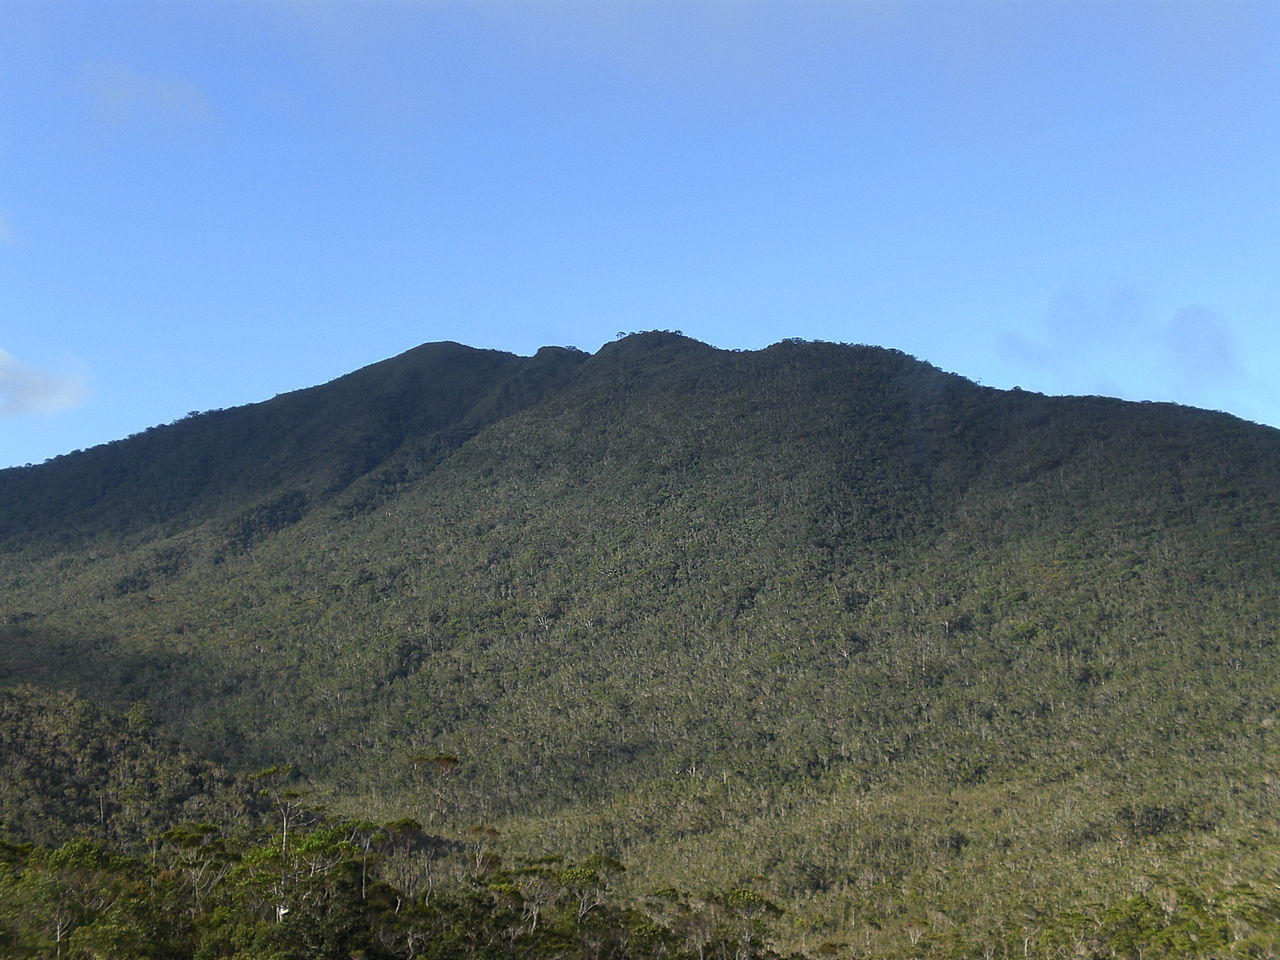 The peak of Mount Hamiguitan